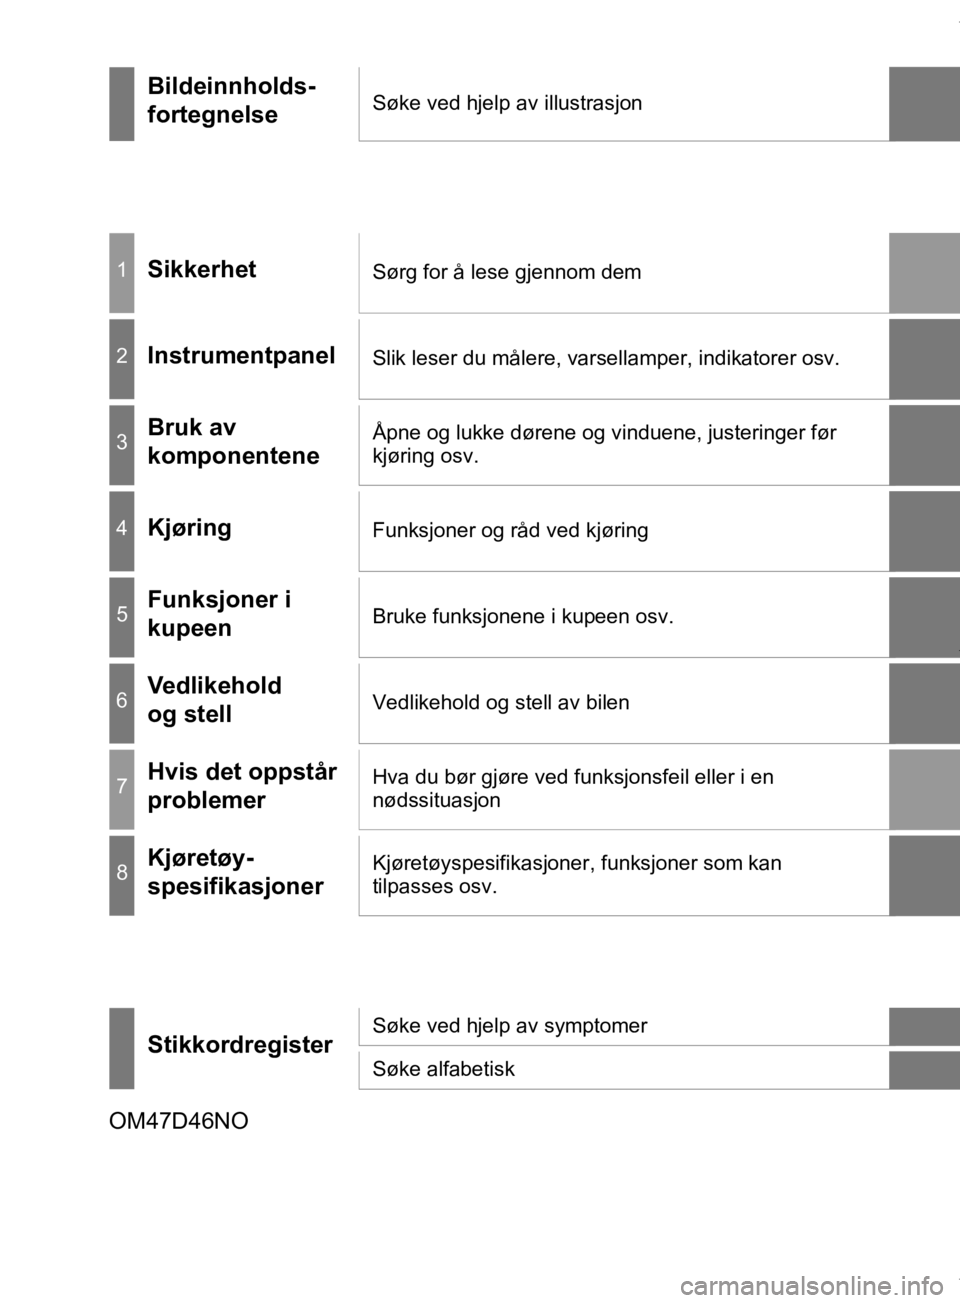 TOYOTA PRIUS 2020  Instruksjoner for bruk (in Norwegian) OM47D46NO
Bildeinnholds-
fortegnelseSøke ved hjelp av illustrasjon
1SikkerhetSørg for å lese gjennom dem
2InstrumentpanelSlik leser du målere, varsellamper, indikatorer osv.
3Bruk av 
komponentene